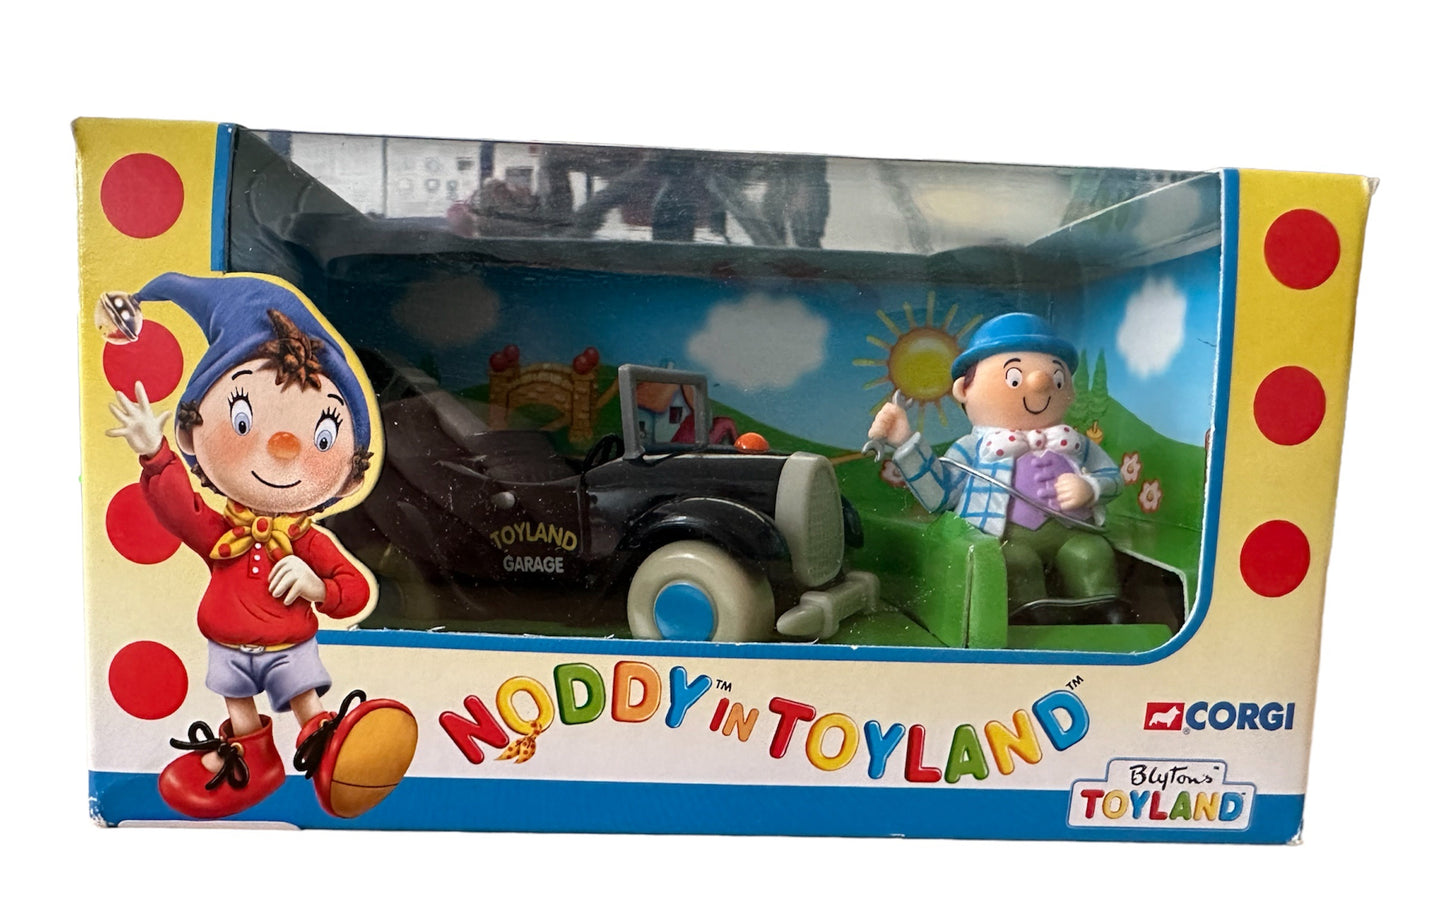 Vintage 2001 Corgi Noddy In Toyland - Mr Sparks Pickup Truck Die-Cast Model With Mr Sparks Figure - Brand New Shop Stock Room Find